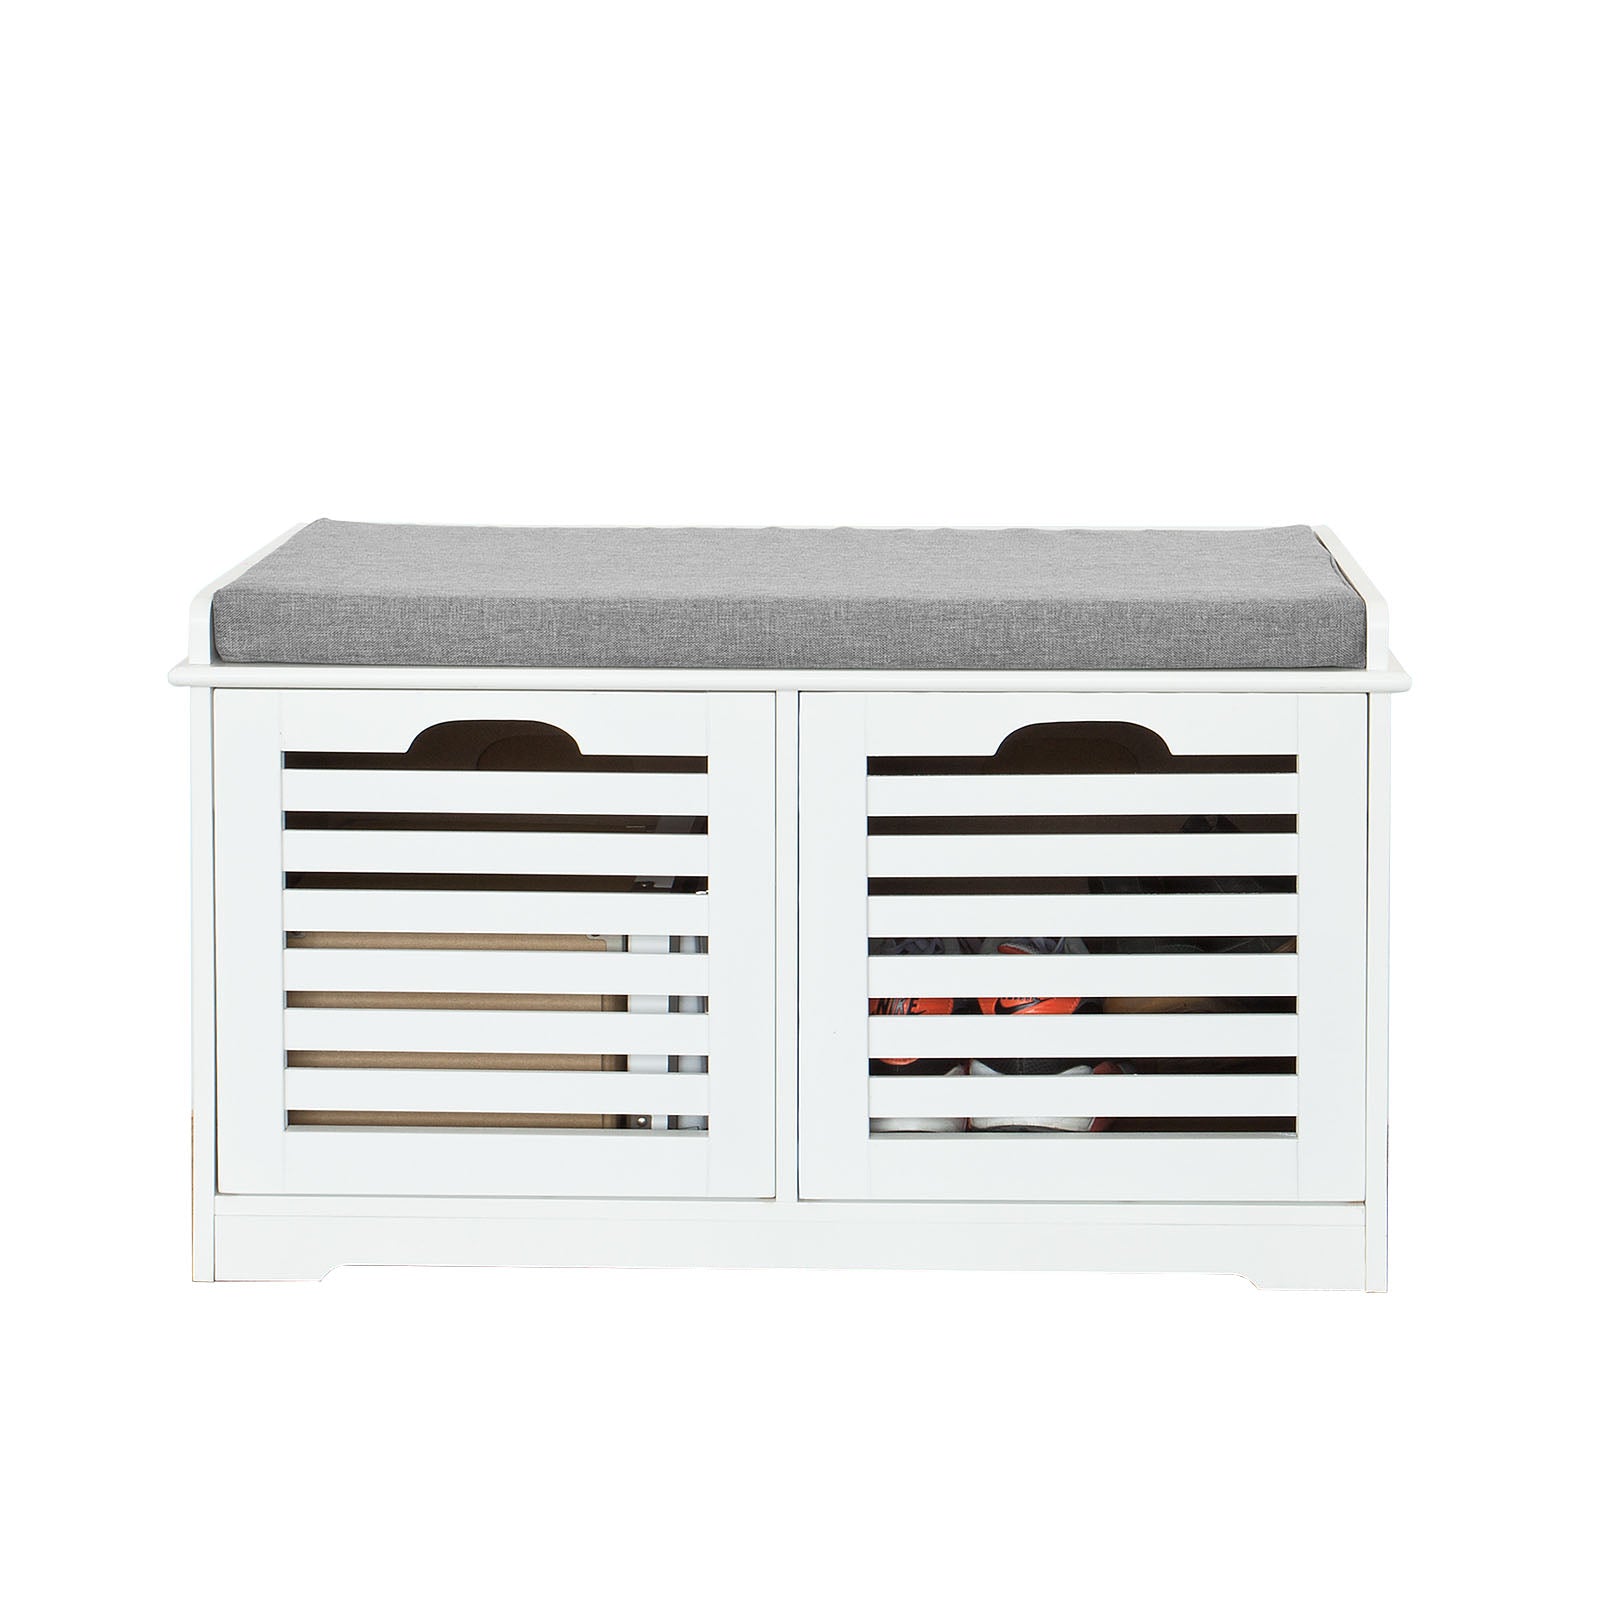 SoBuy Shoe Storage Bench with 2 Drawers & Cushion,FSR23-K-W